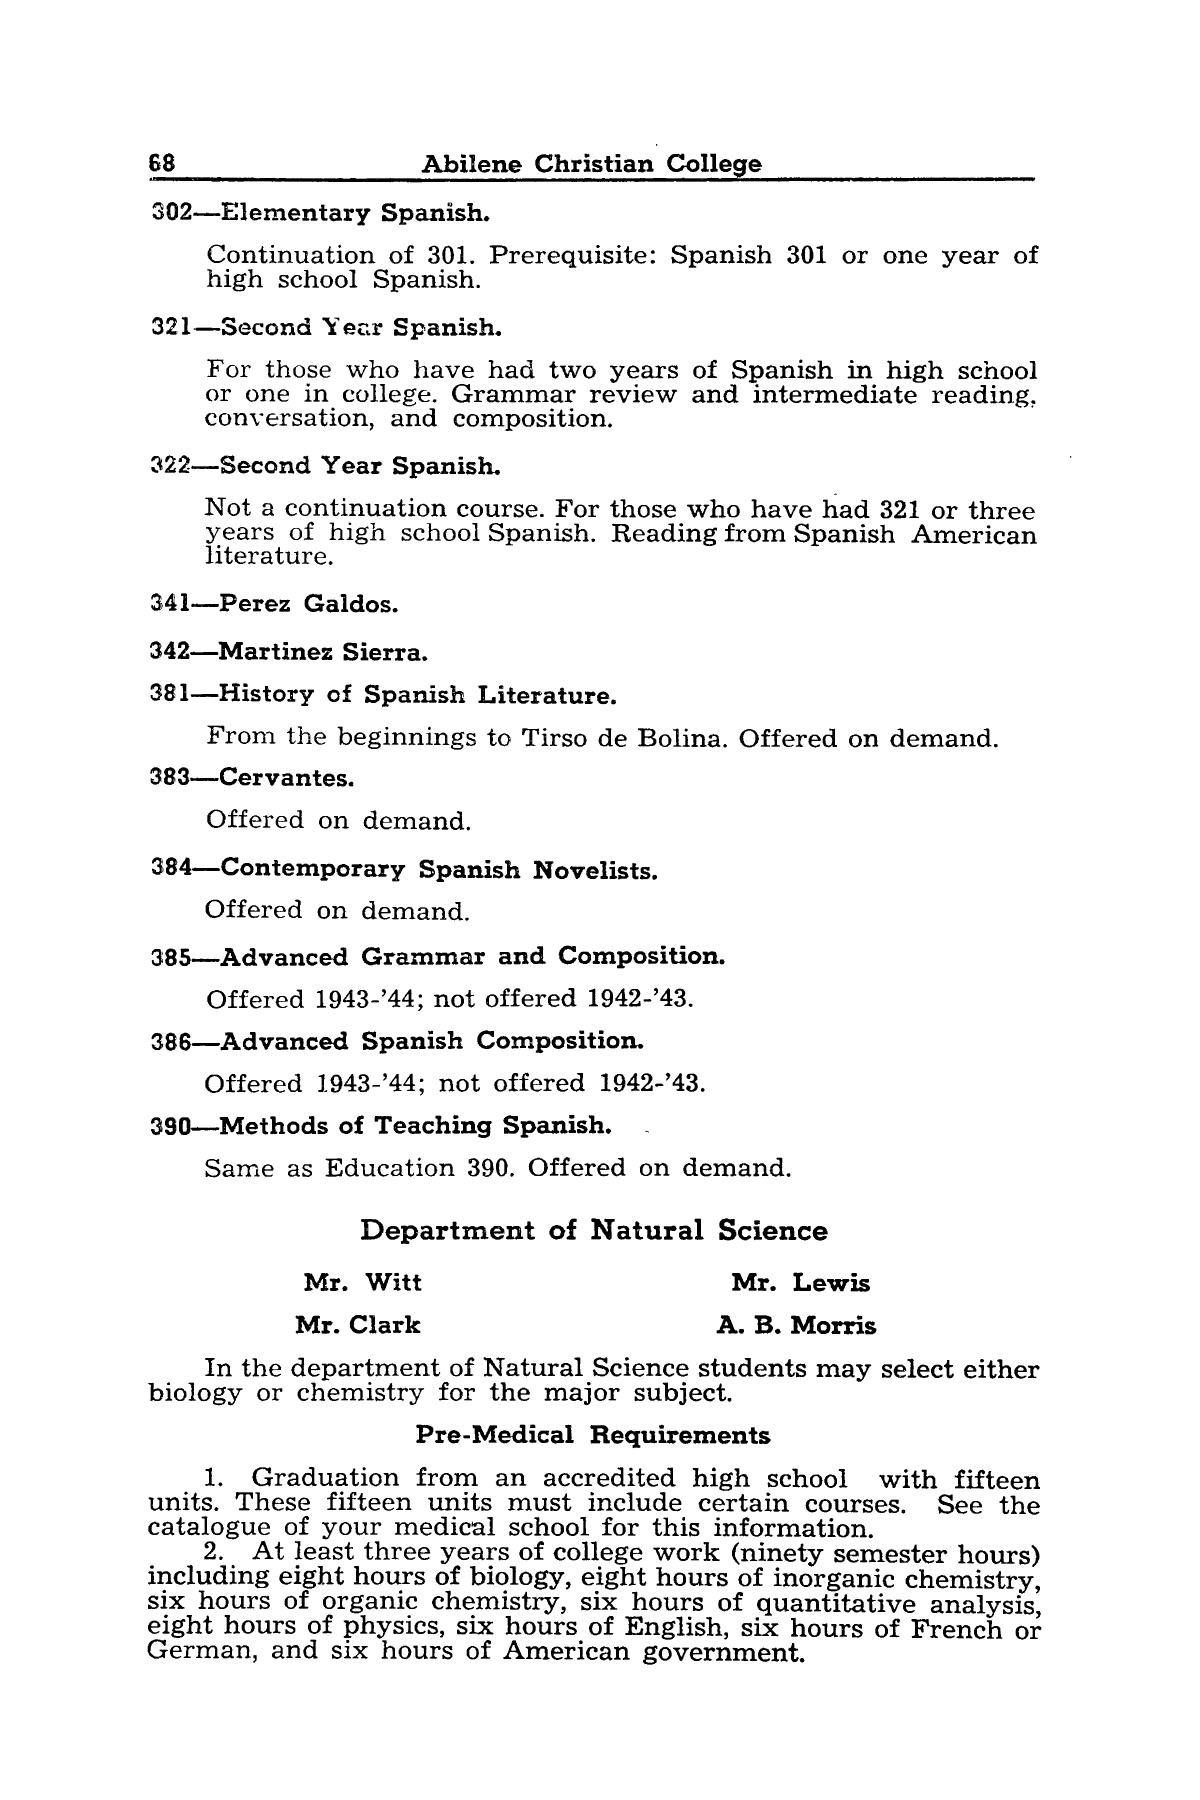 Catalog of Abilene Christian College, 1942-1943
                                                
                                                    68
                                                